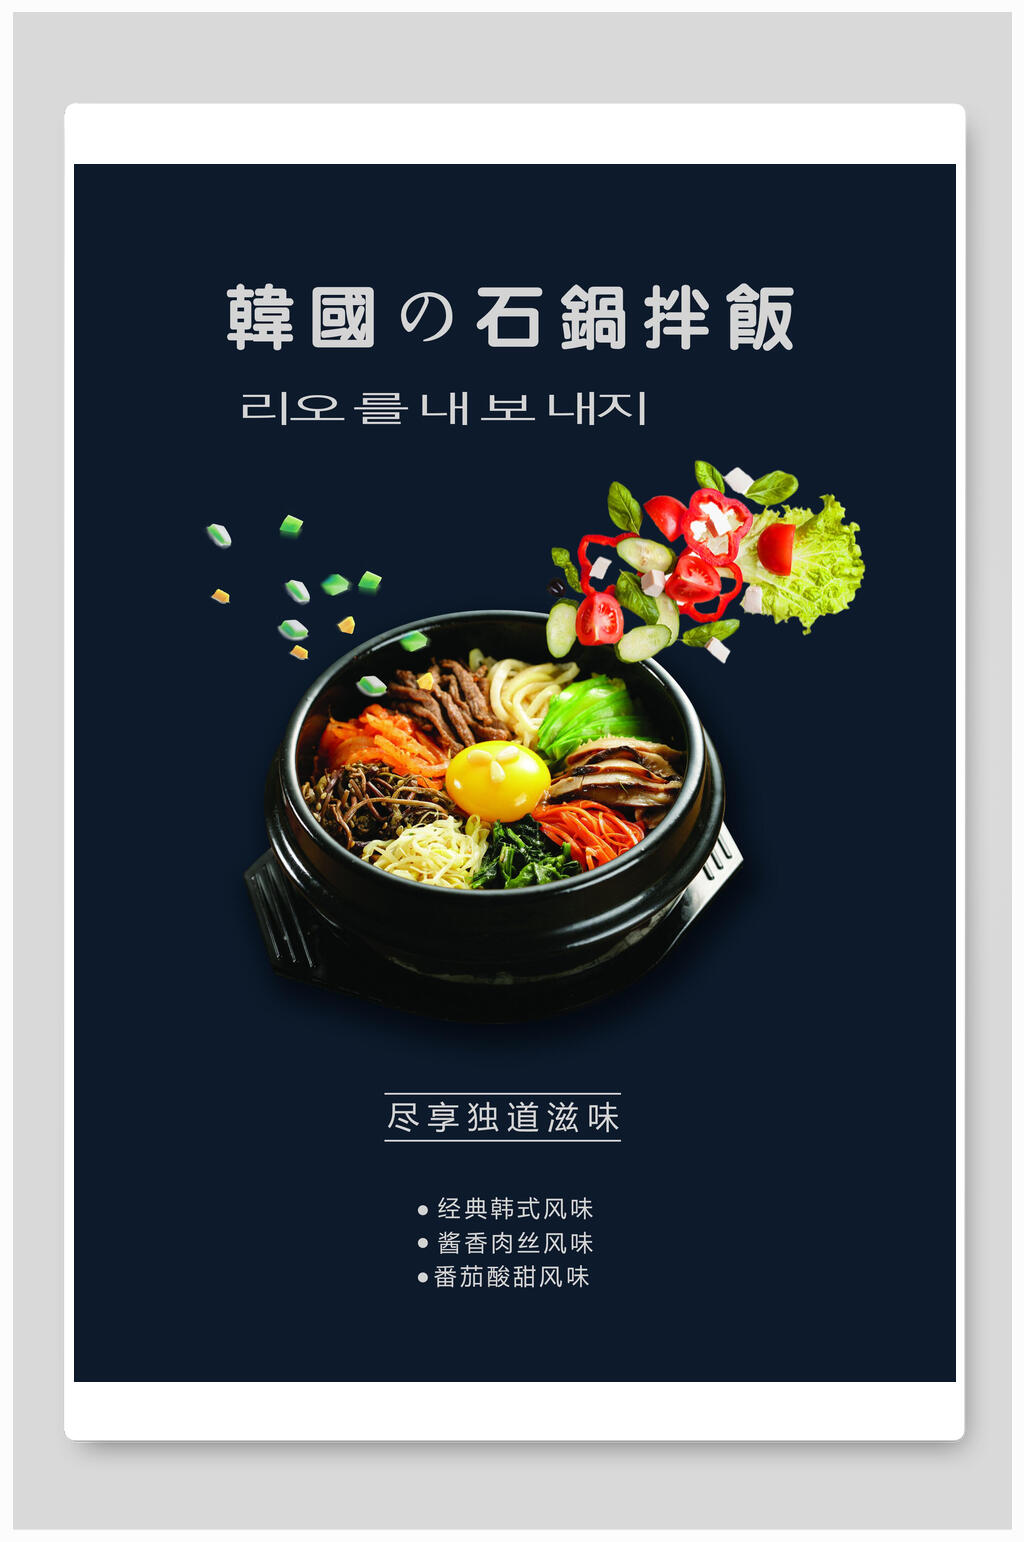 石锅拌饭广告语图片